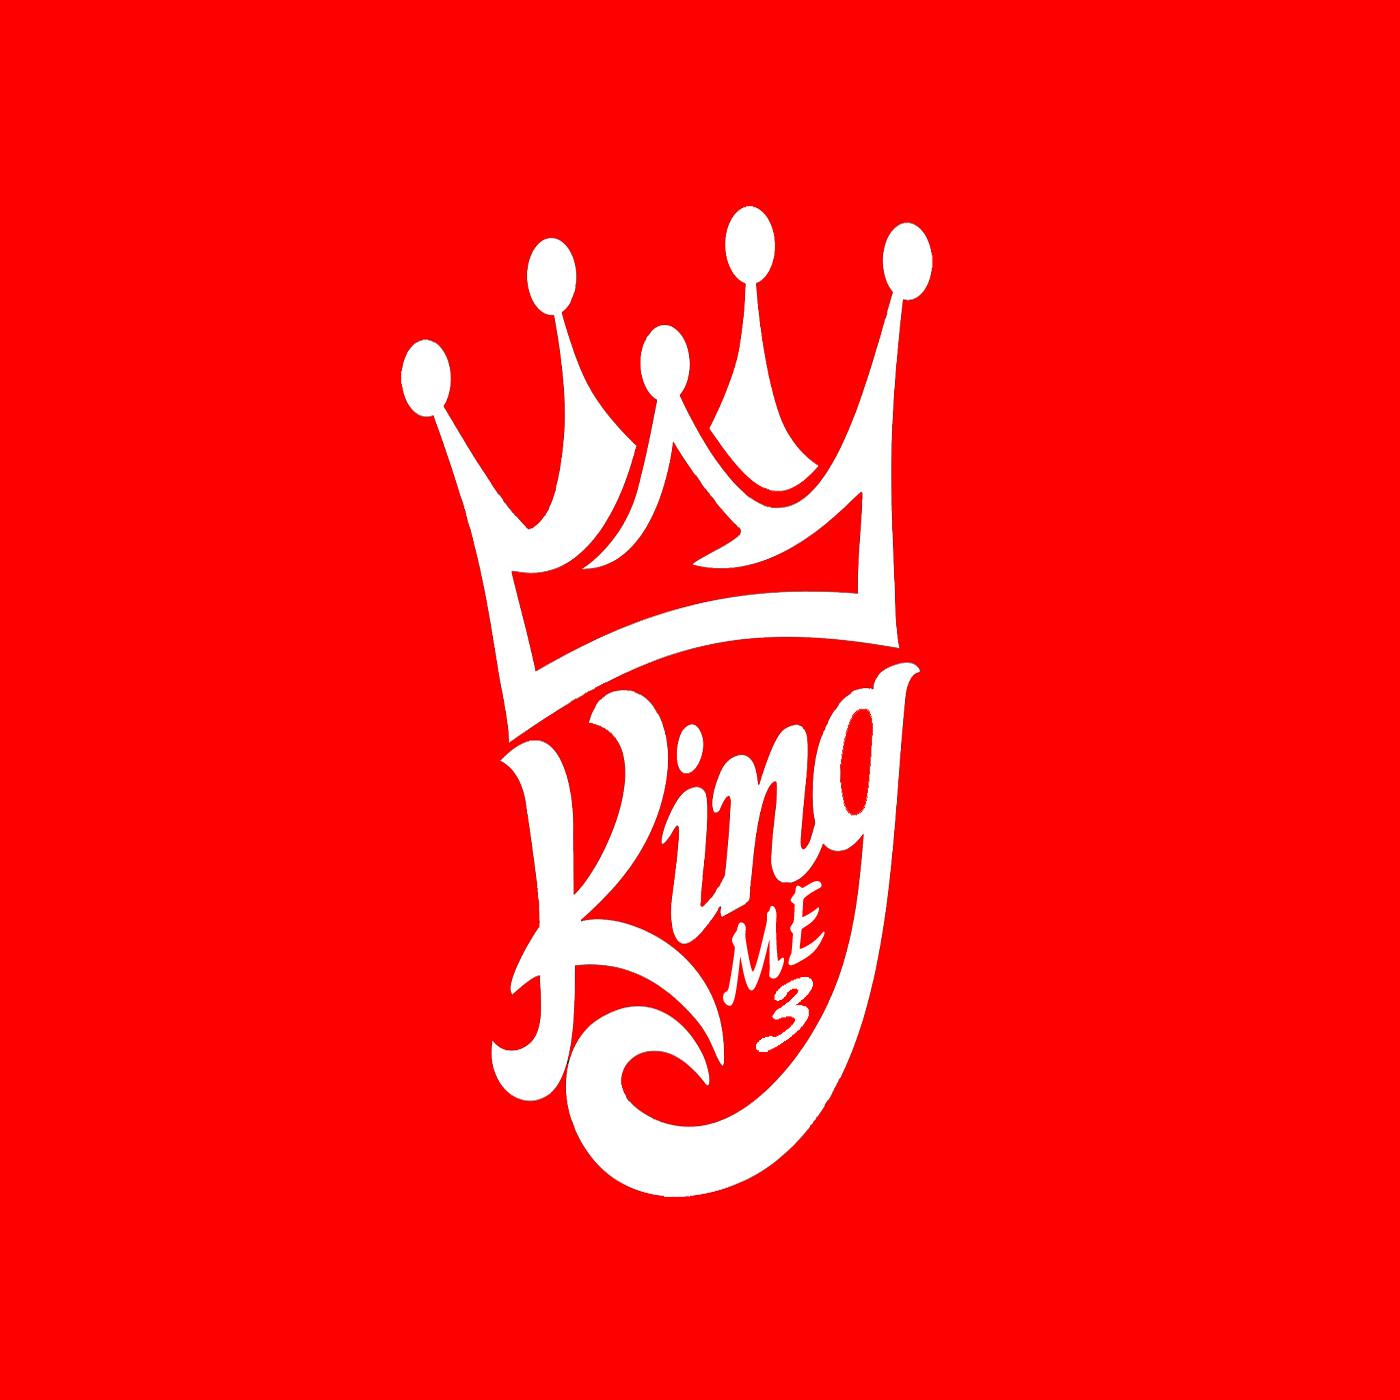 King Me 3